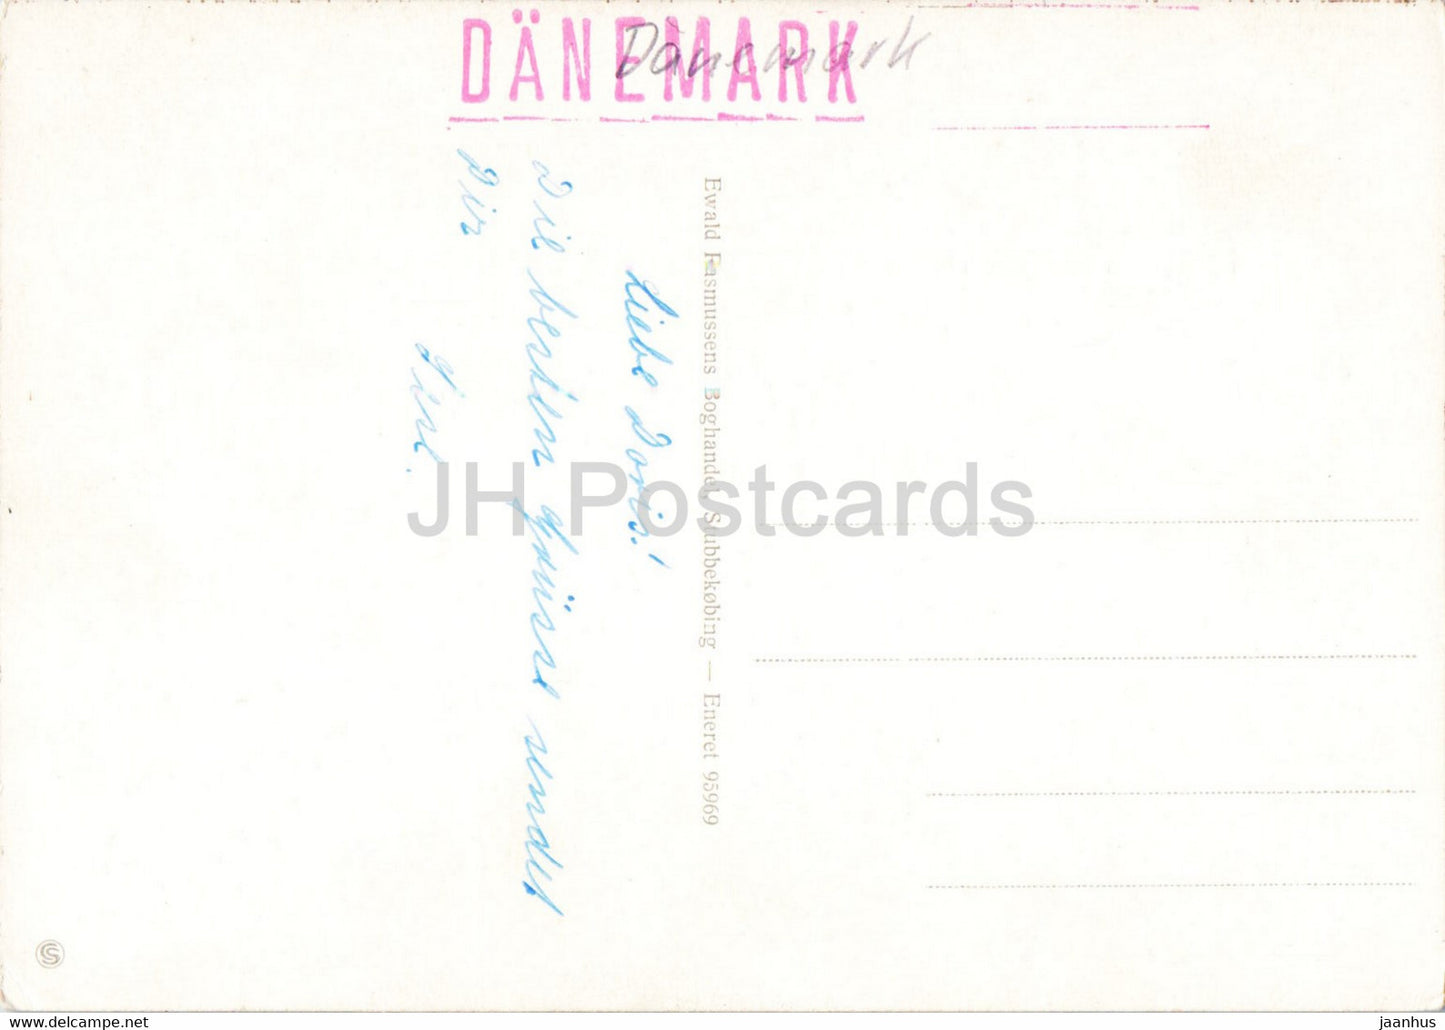 Havnen - Stubbekobing - port - - bateau - navire - carte postale ancienne - Danemark - utilisé